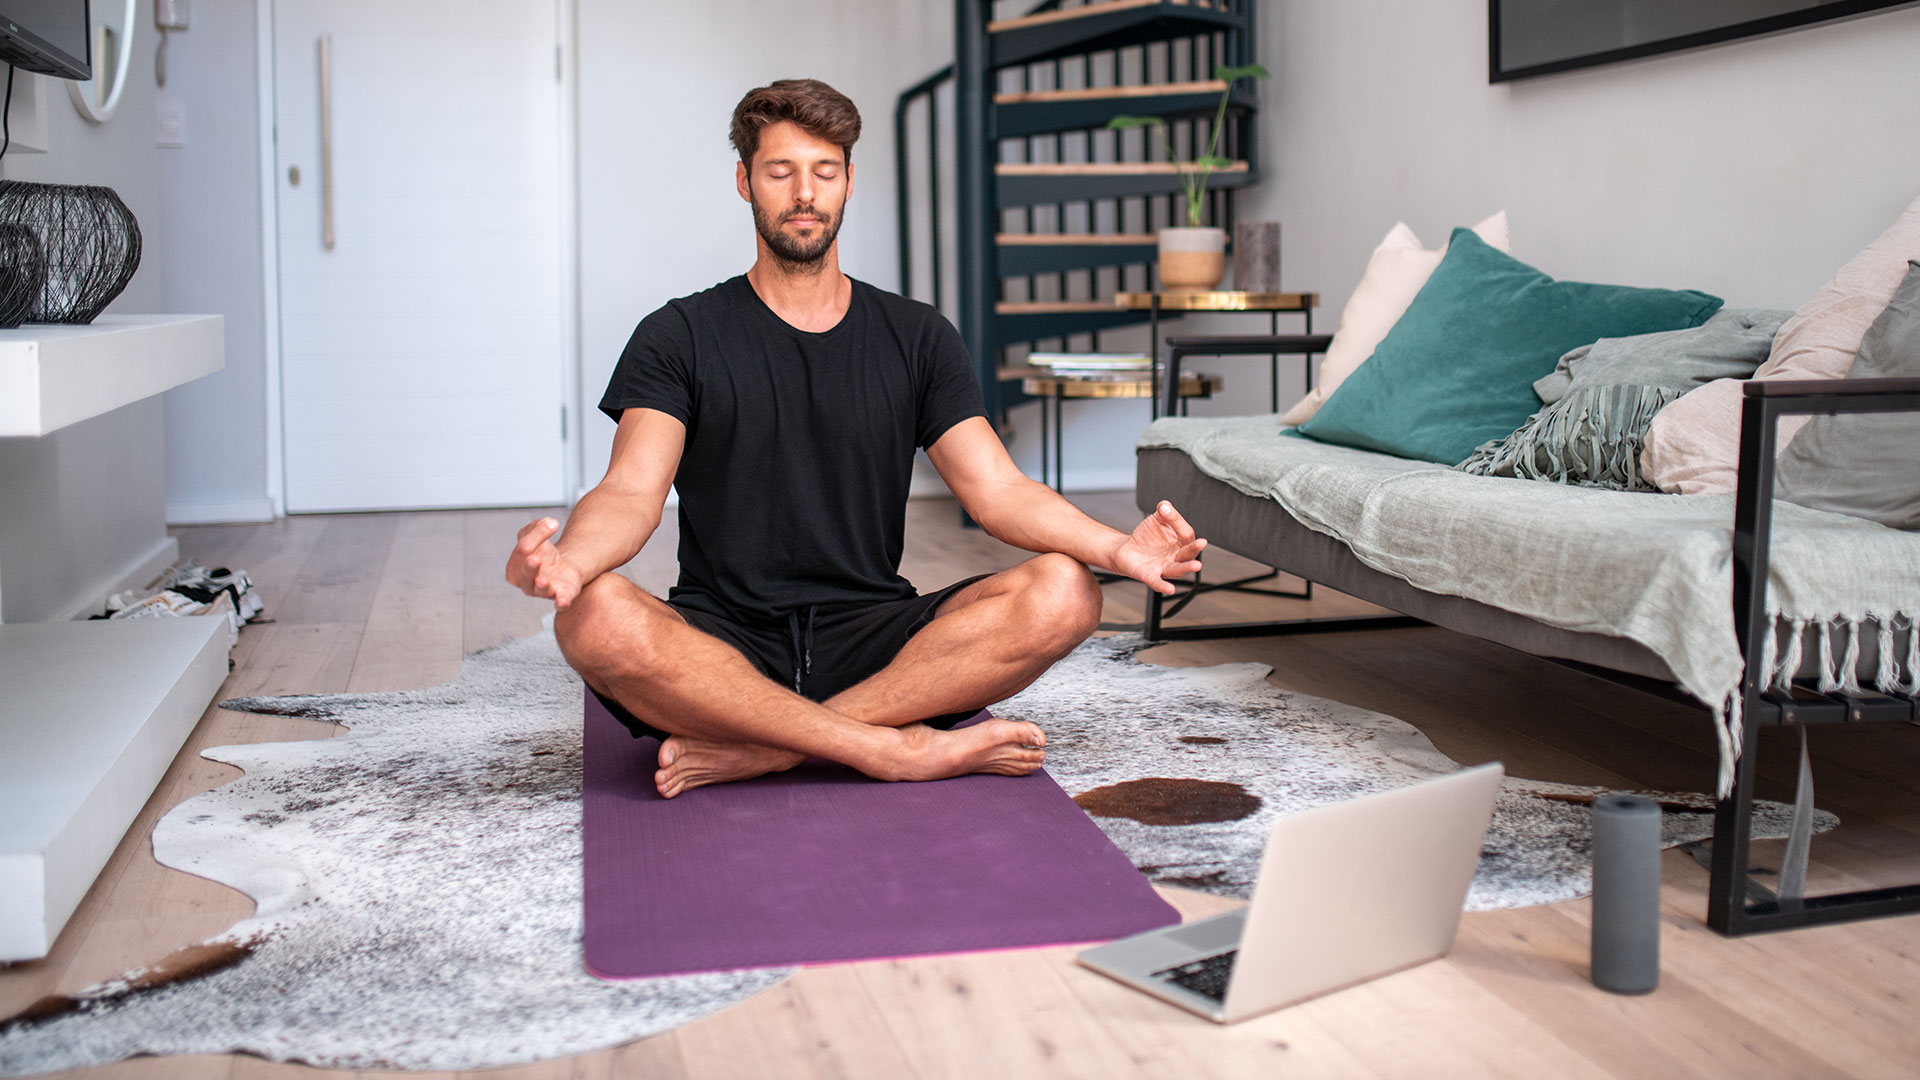 La meditación ayuda a mejorar el bienestar físico y mental (Getty Images)